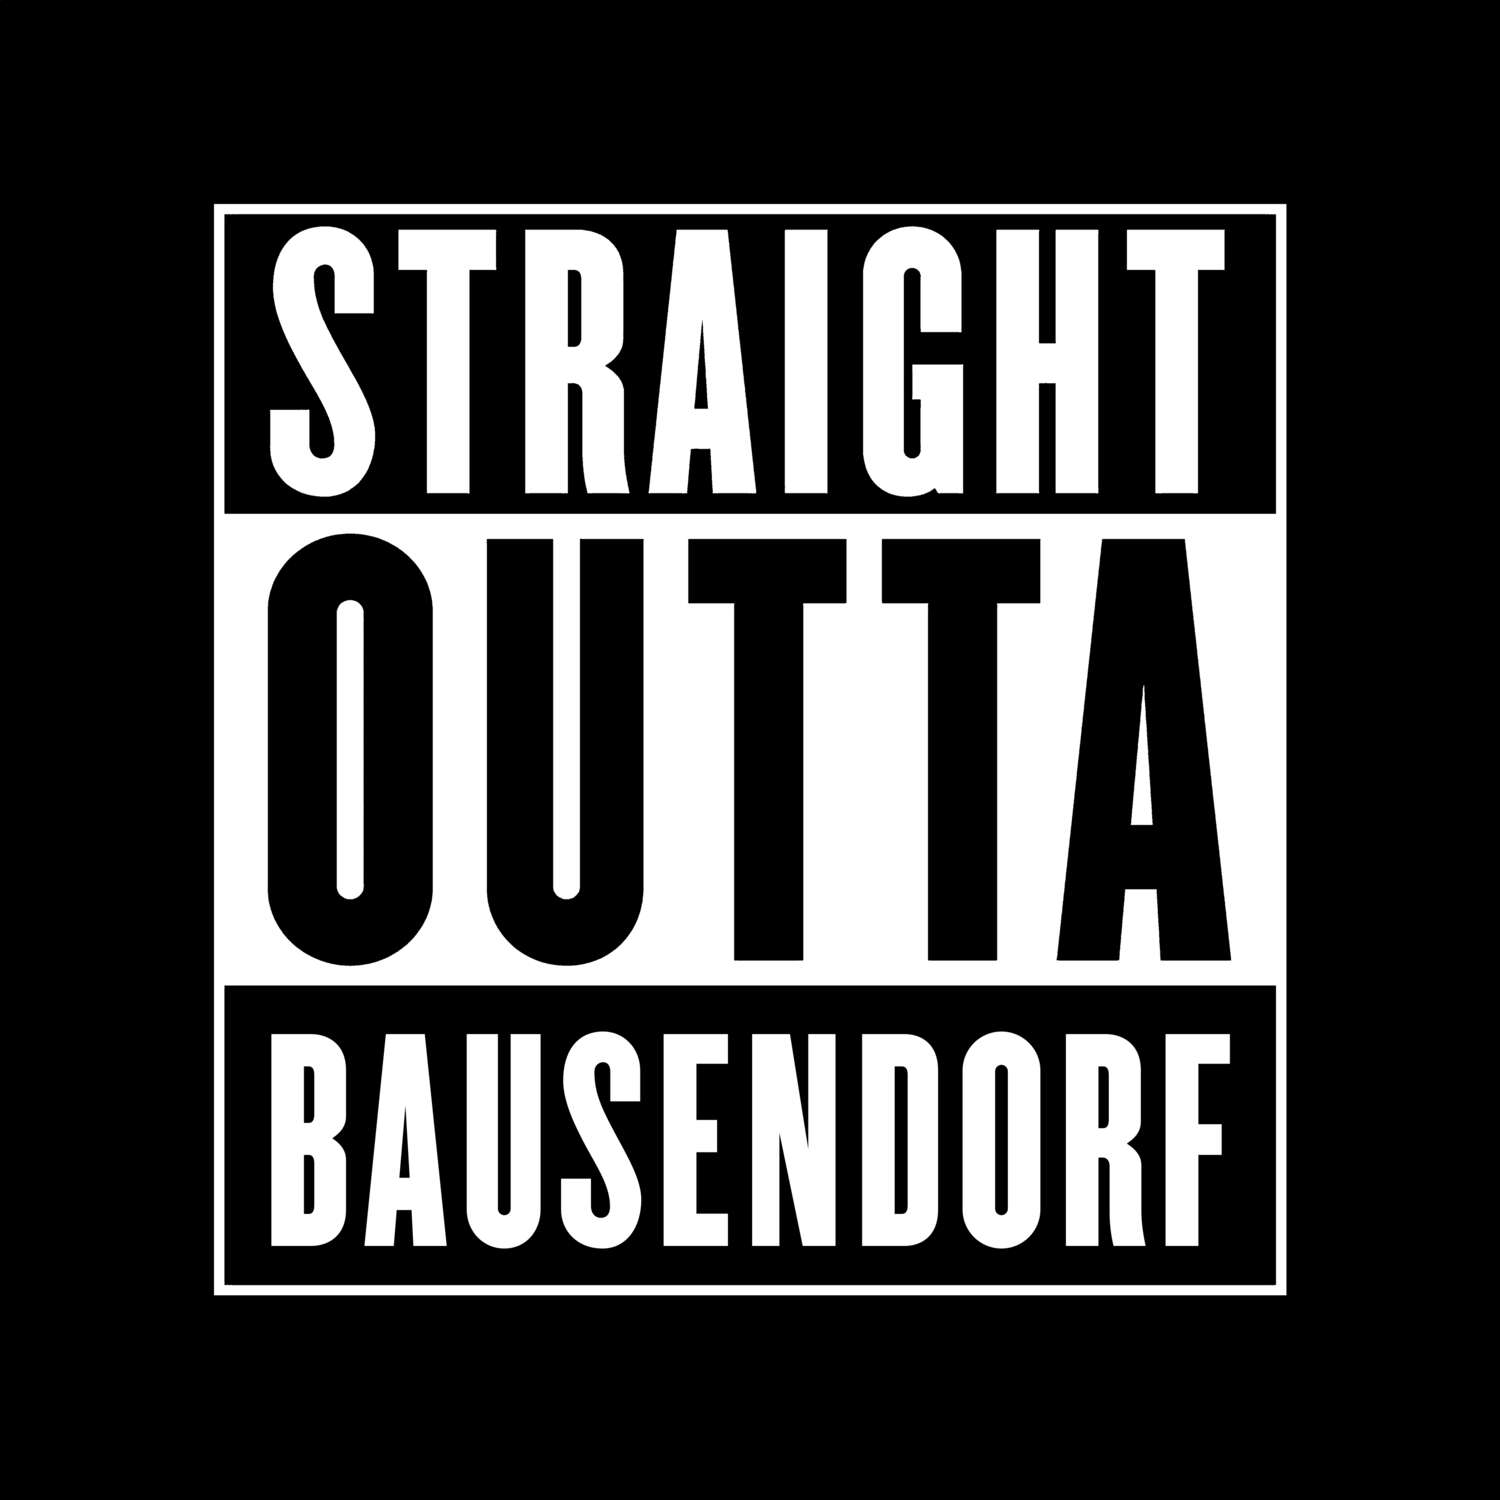 Bausendorf T-Shirt »Straight Outta«